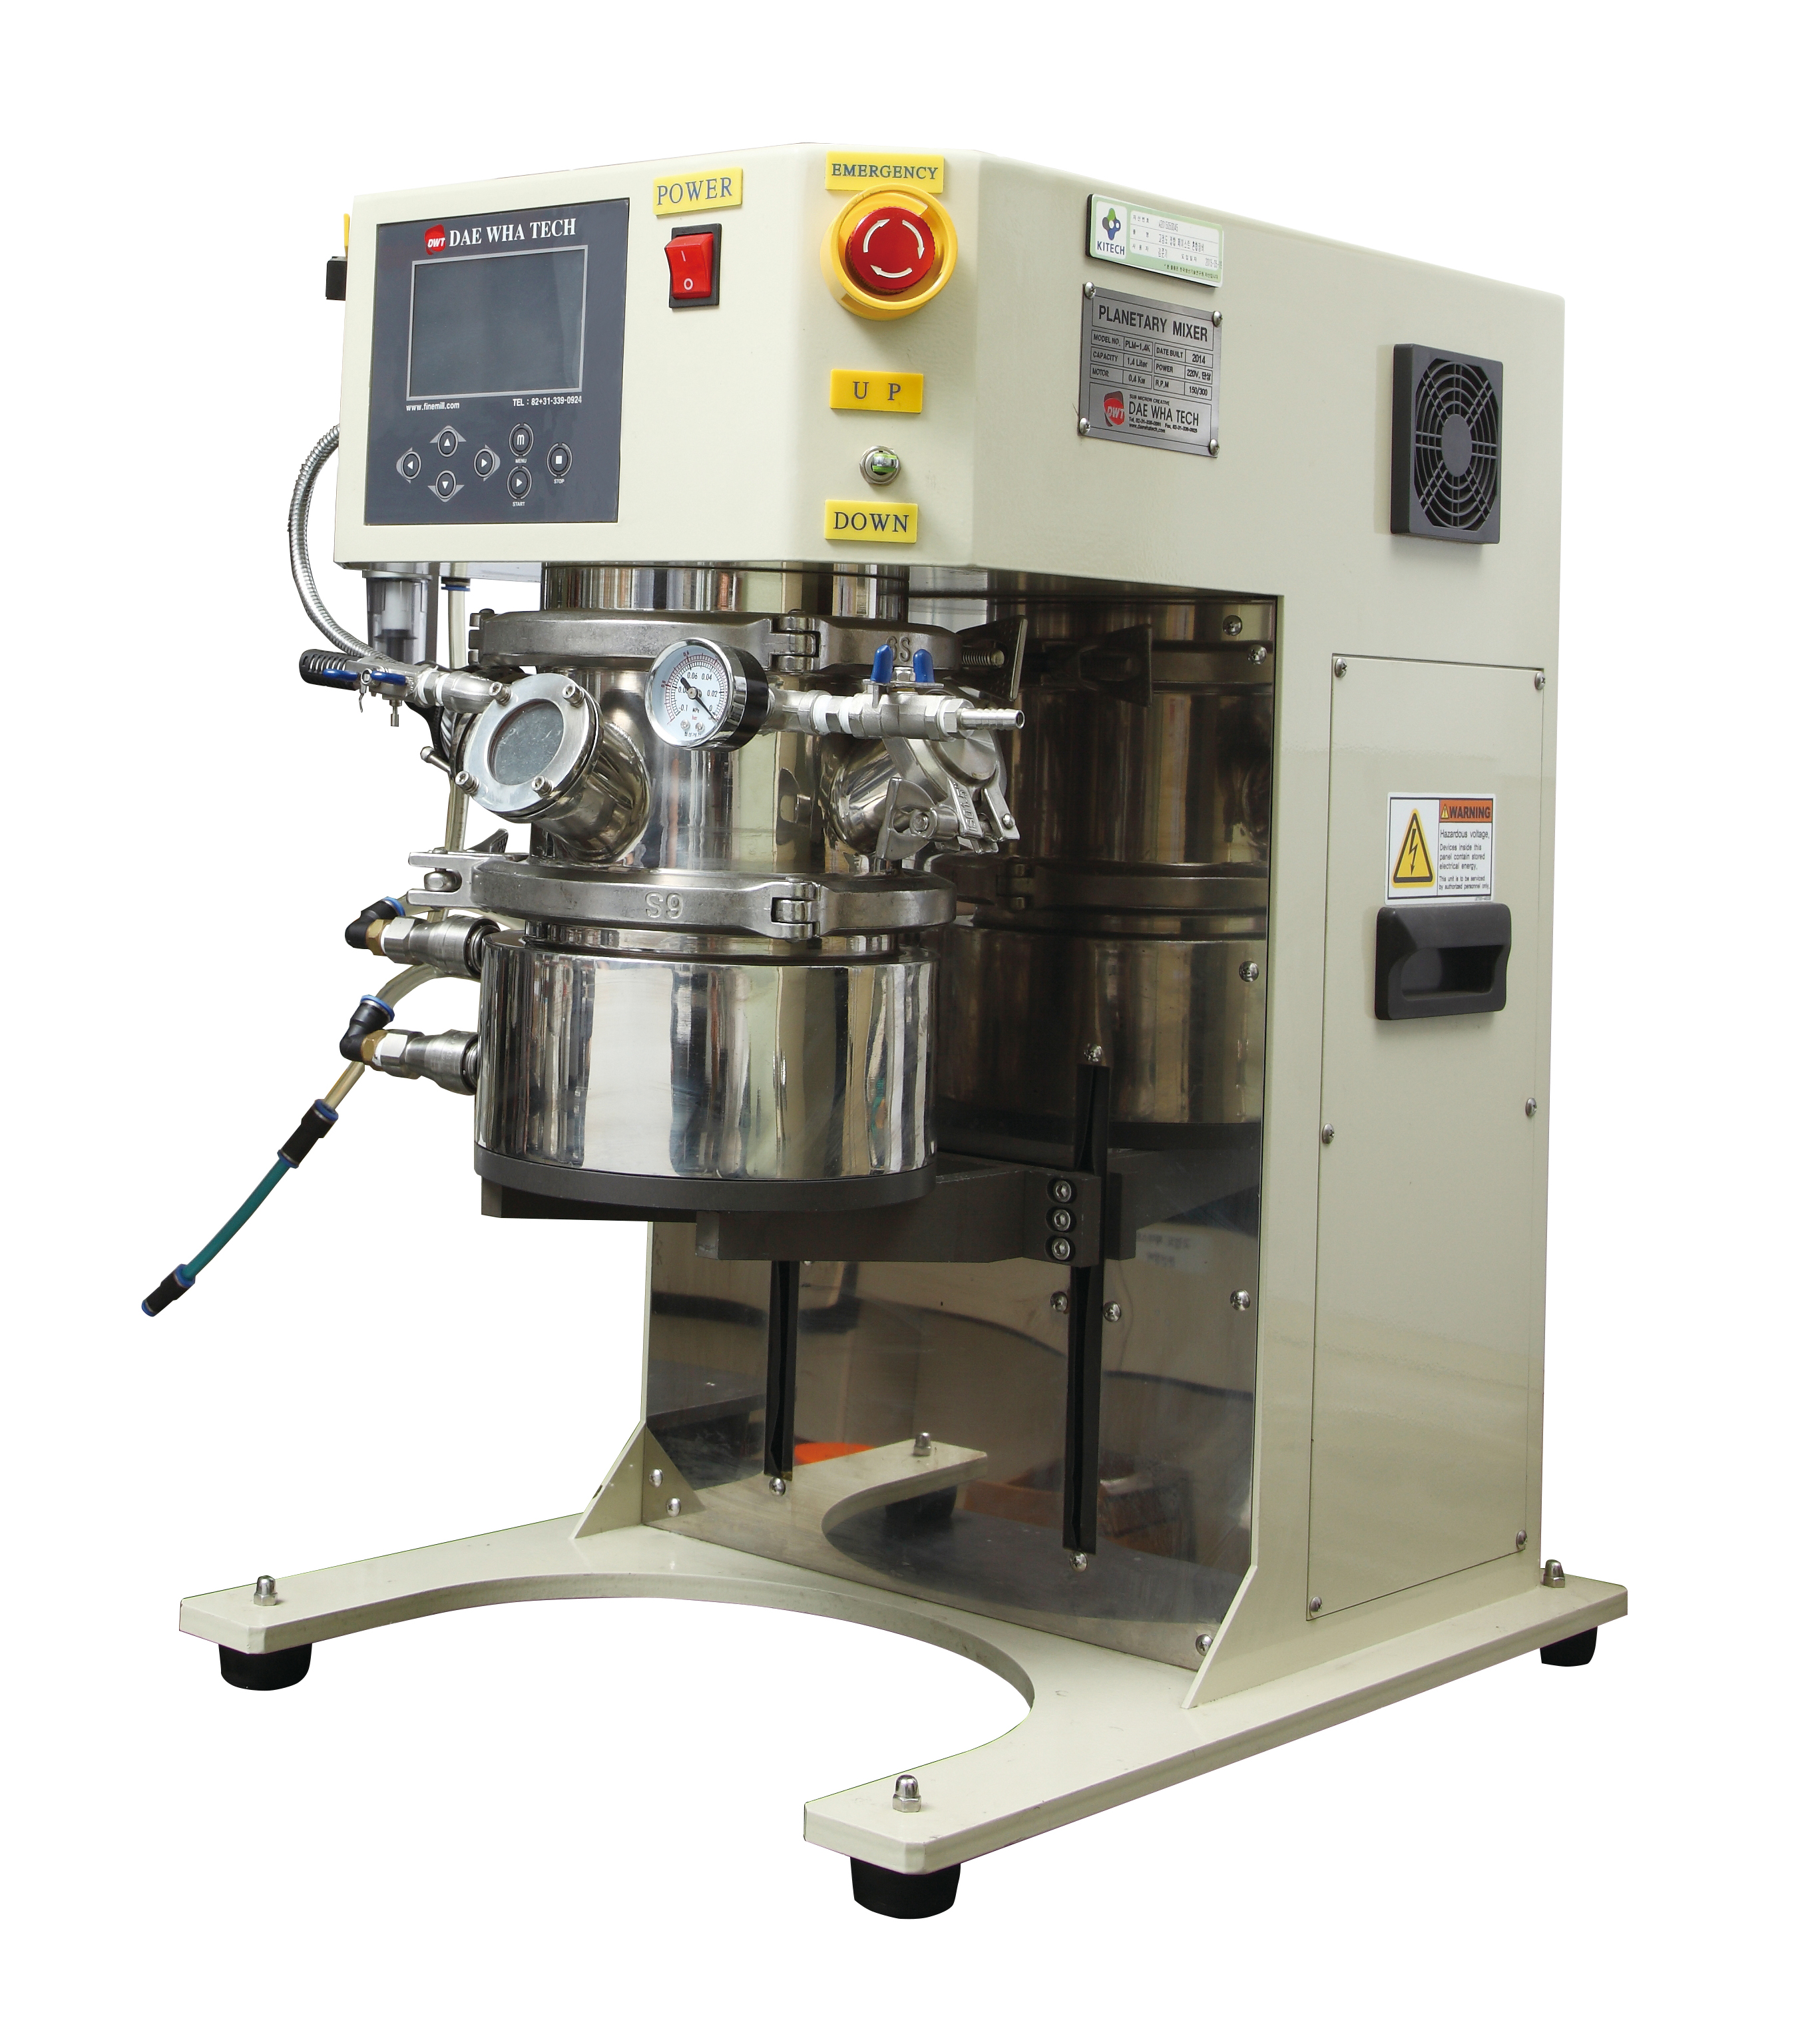 고점도 접합 페이스트 혼합장비(High viscosity joining paste mixing equipment)